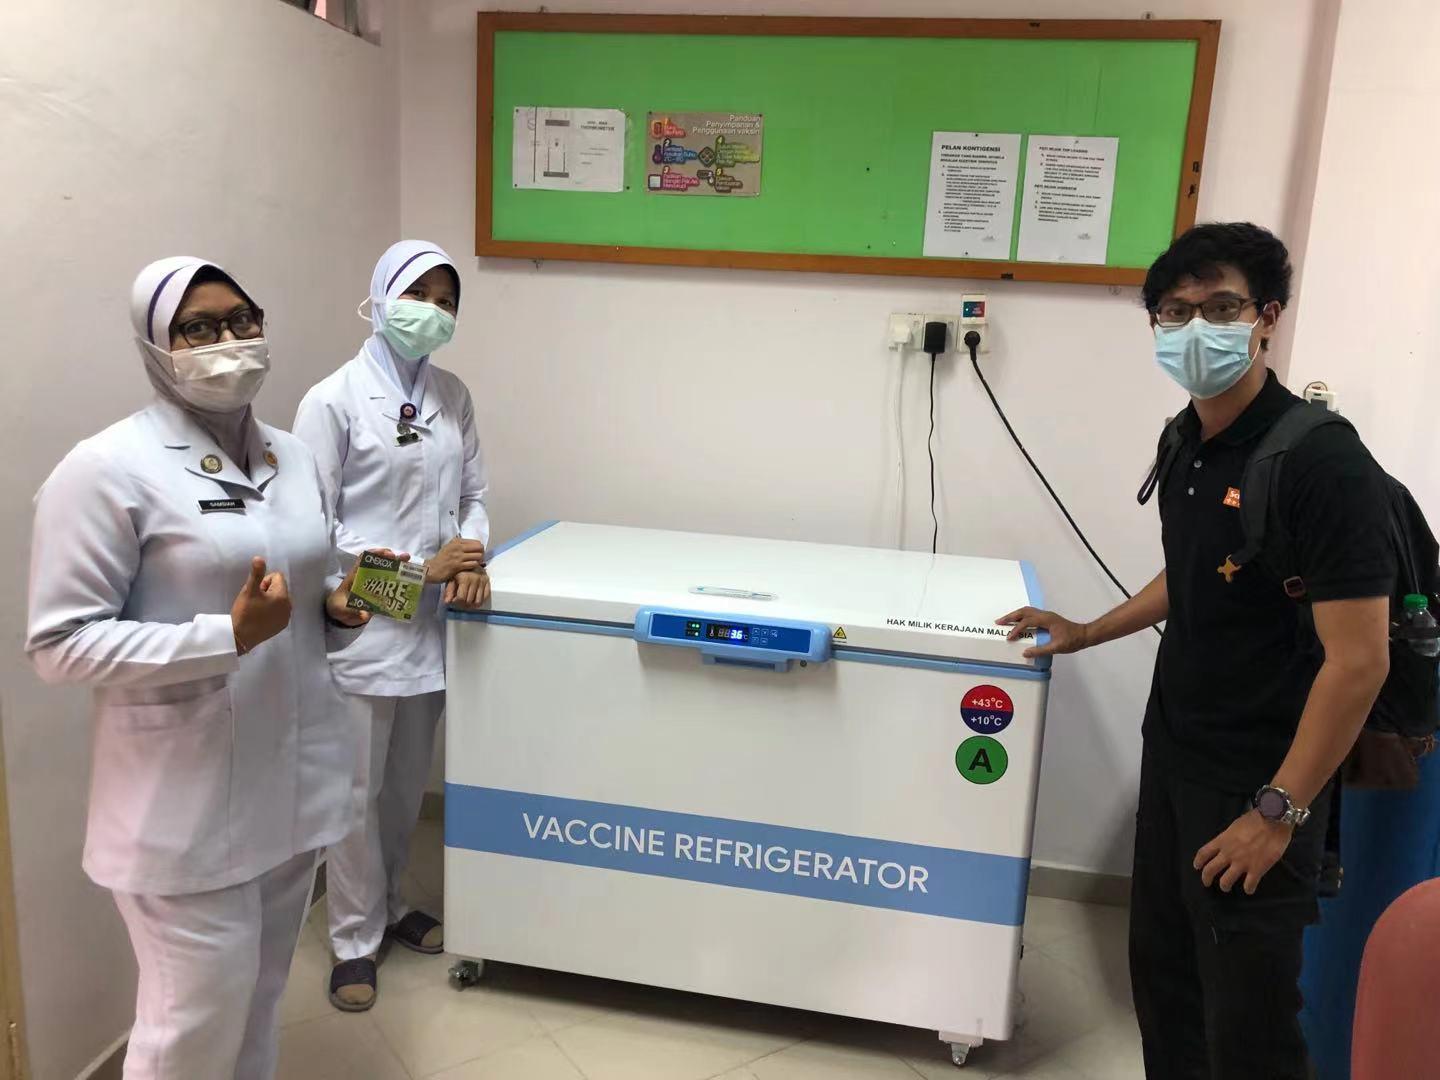 Холодильник со льдом Meling помогает вакцинации в Малайзии
